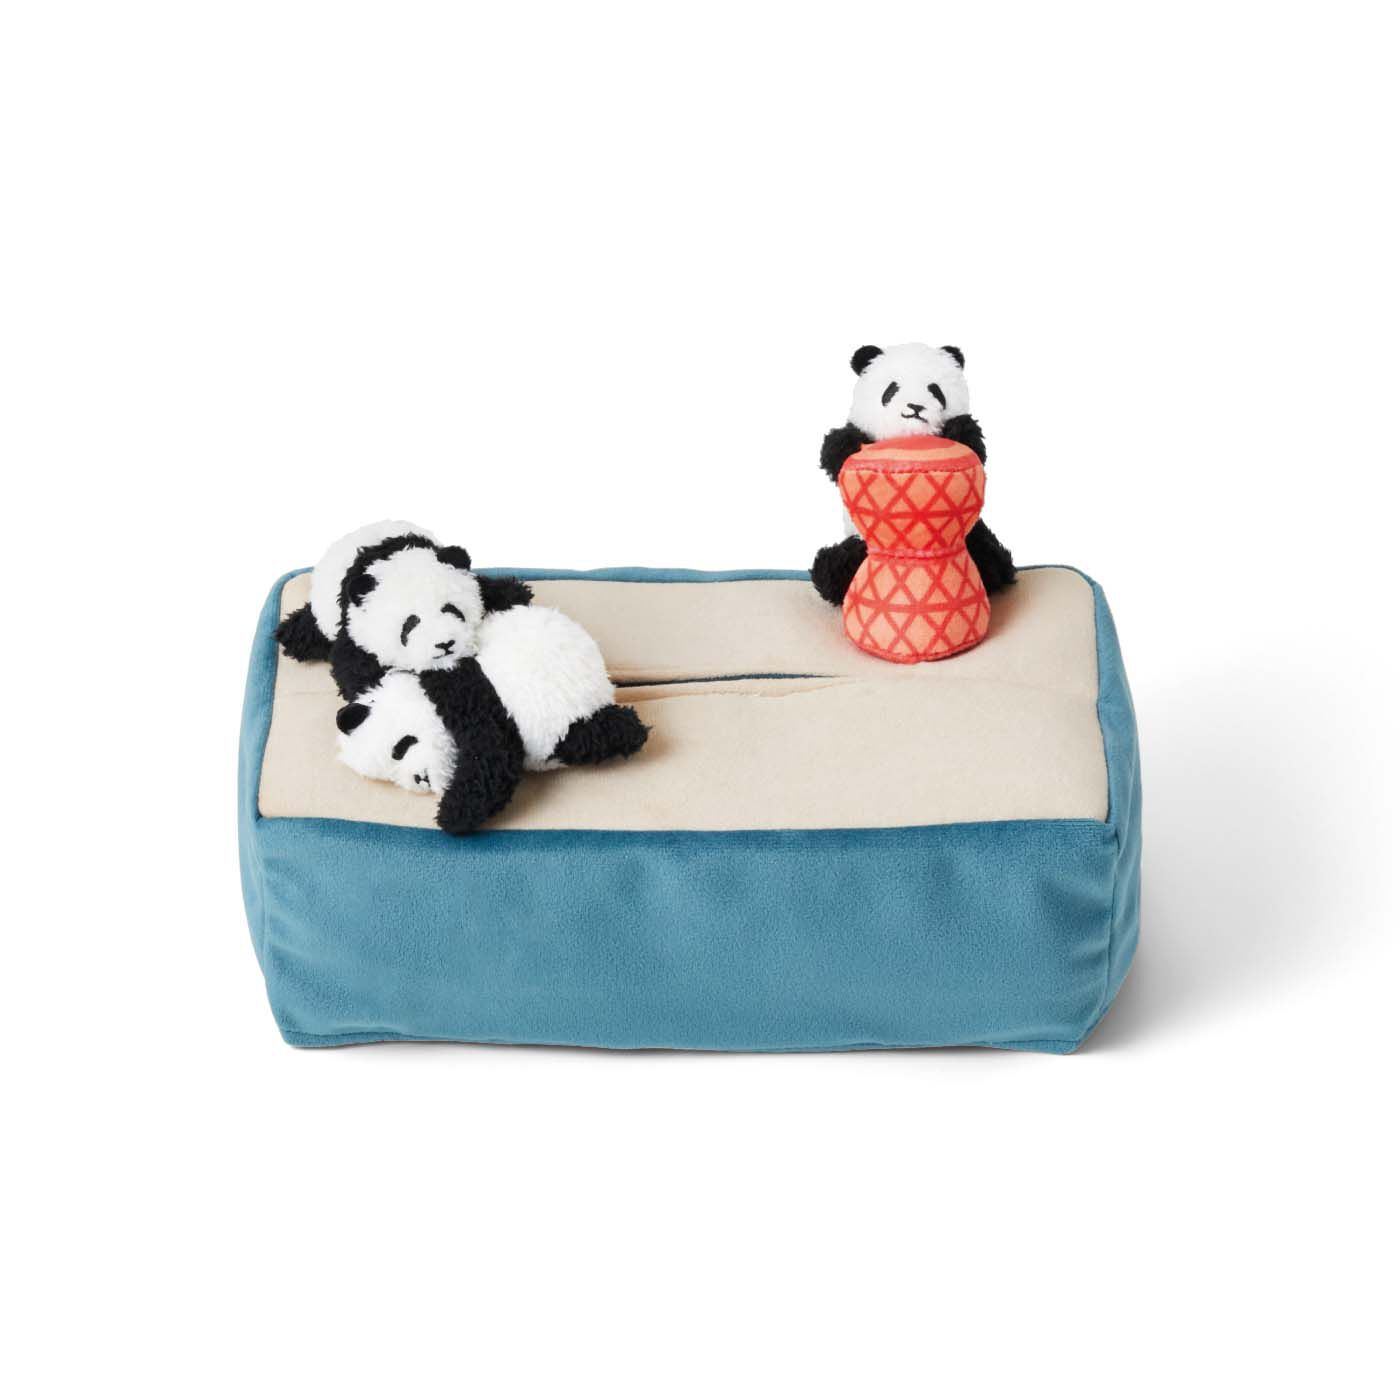 フェリシモコレクション|赤ちゃんパンダがポートタワーのおもちゃで遊ぶボックスティッシュカバー